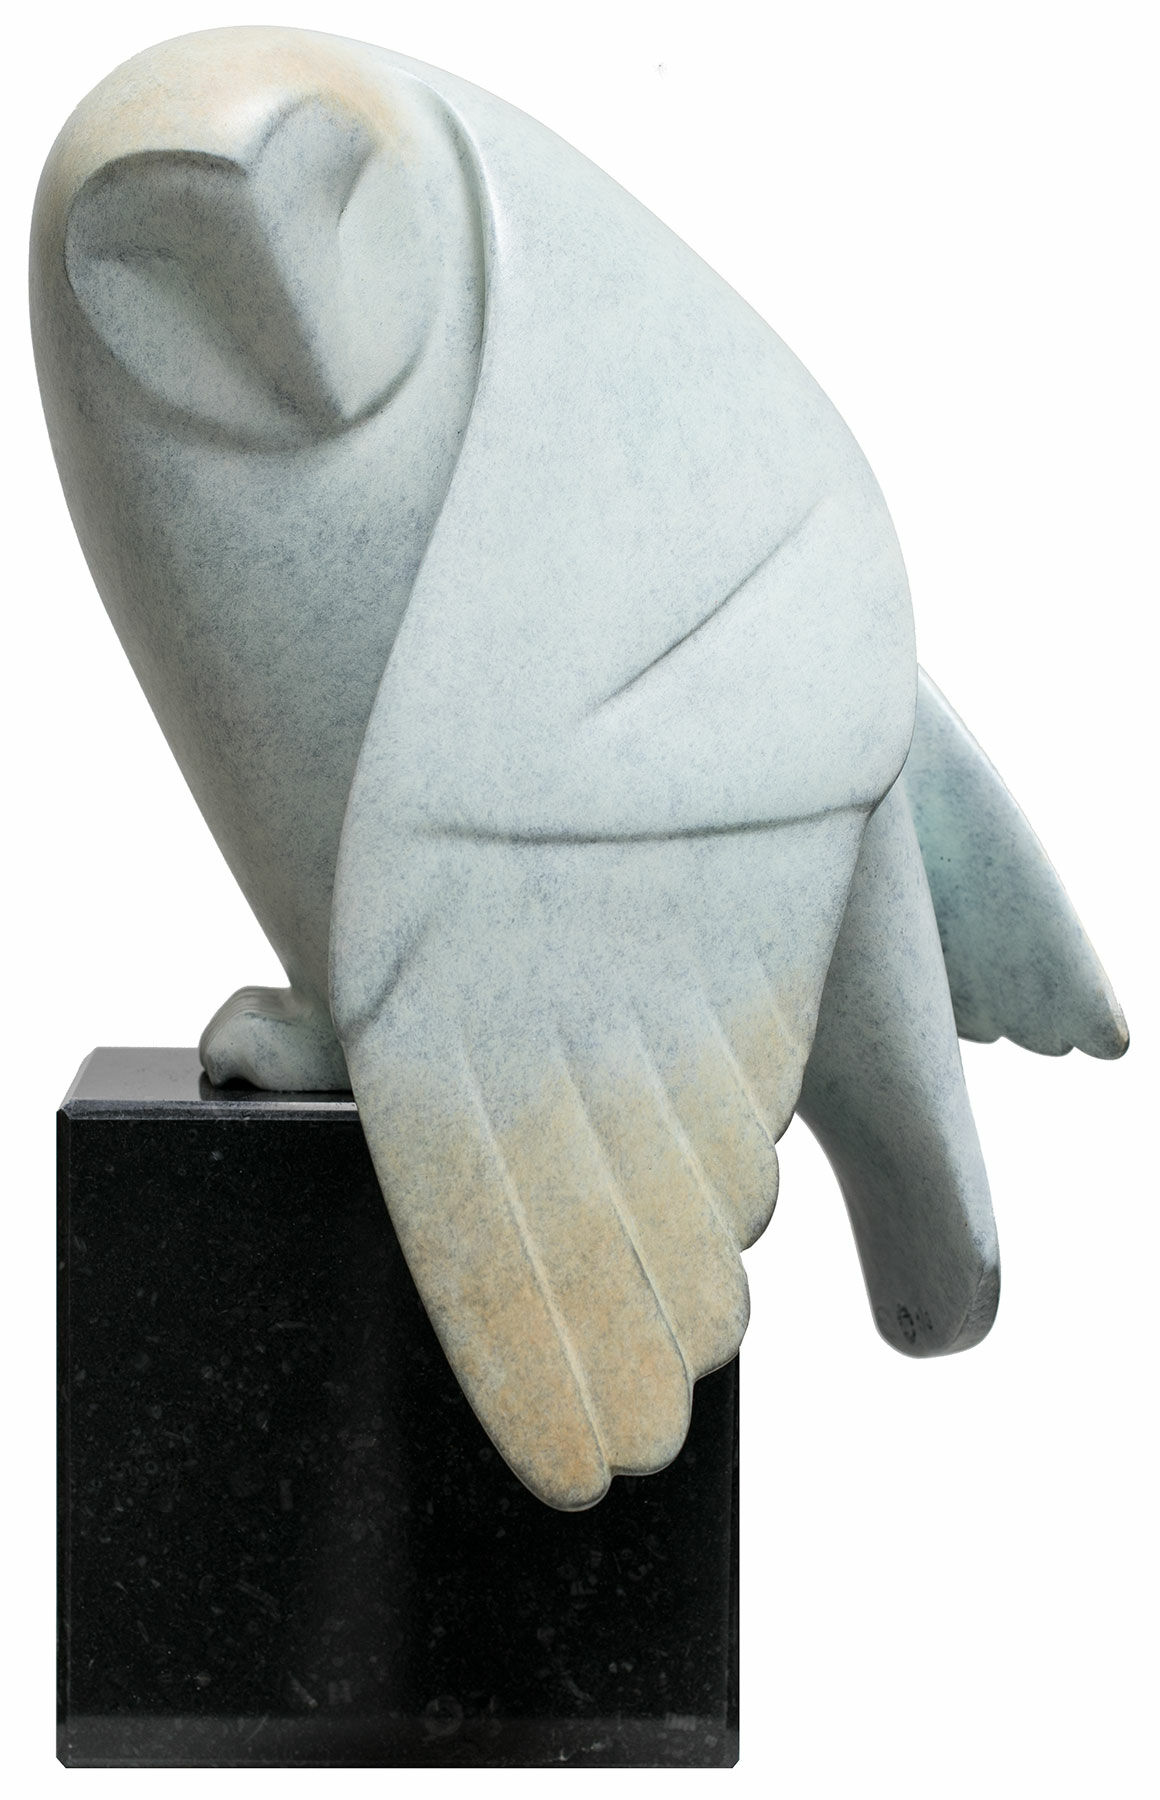 Sculpture "Upward Looking Owl No. 1", bronze grey by Evert den Hartog